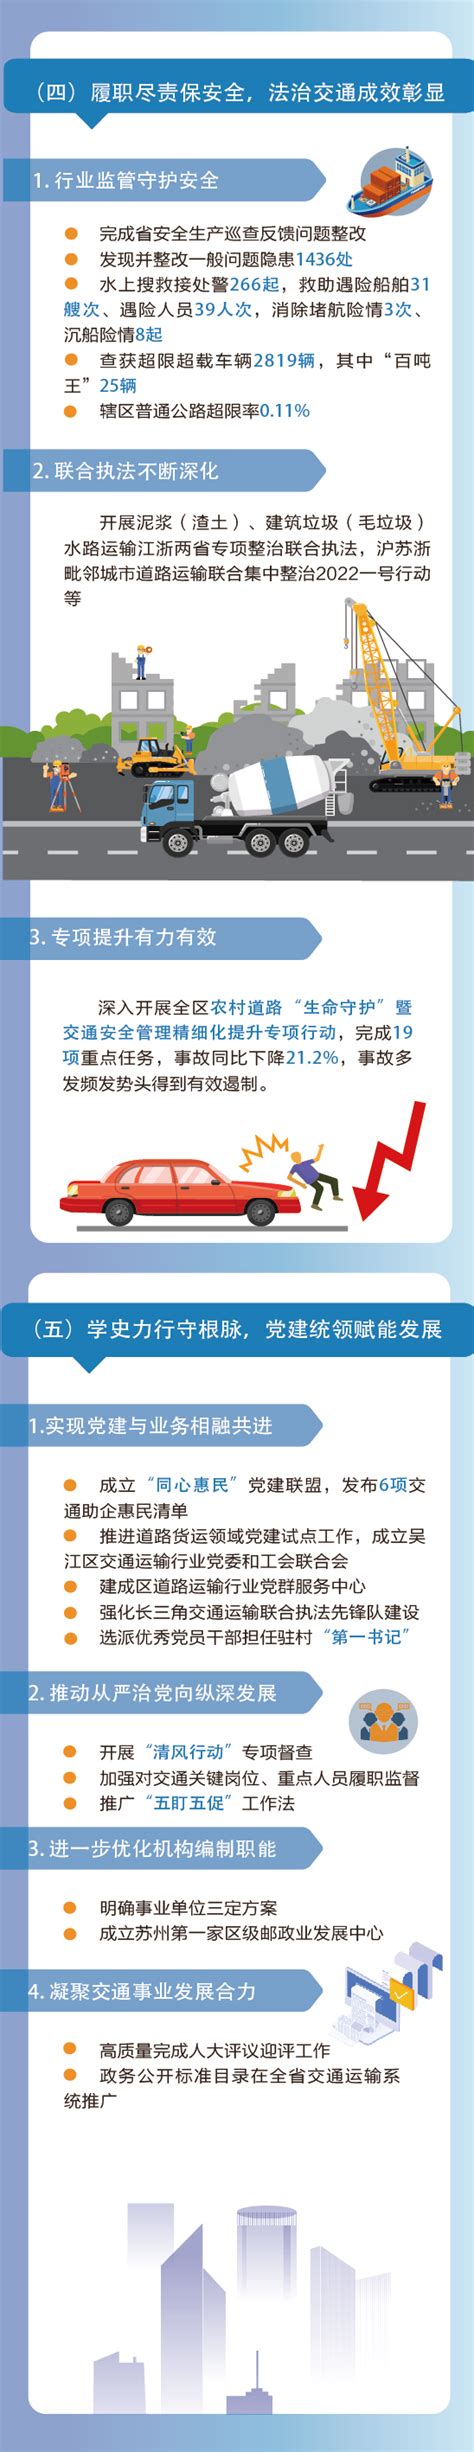 一图读懂2022年吴江交通运输工作_多样化解读